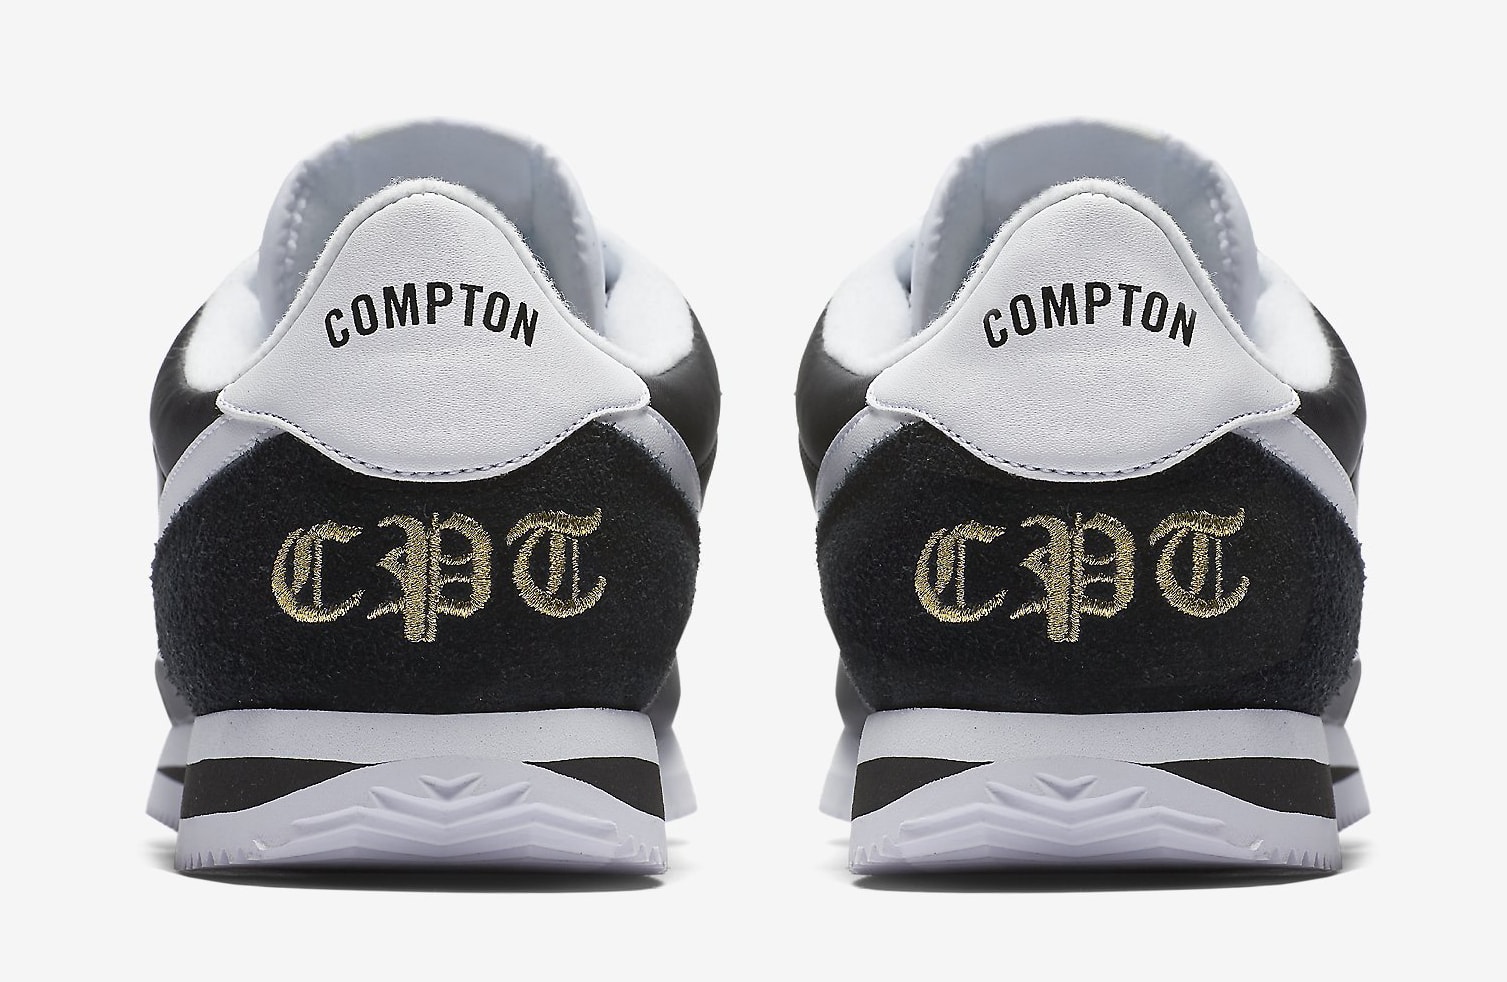 Nike Cortez Compton 902804-001 Heel